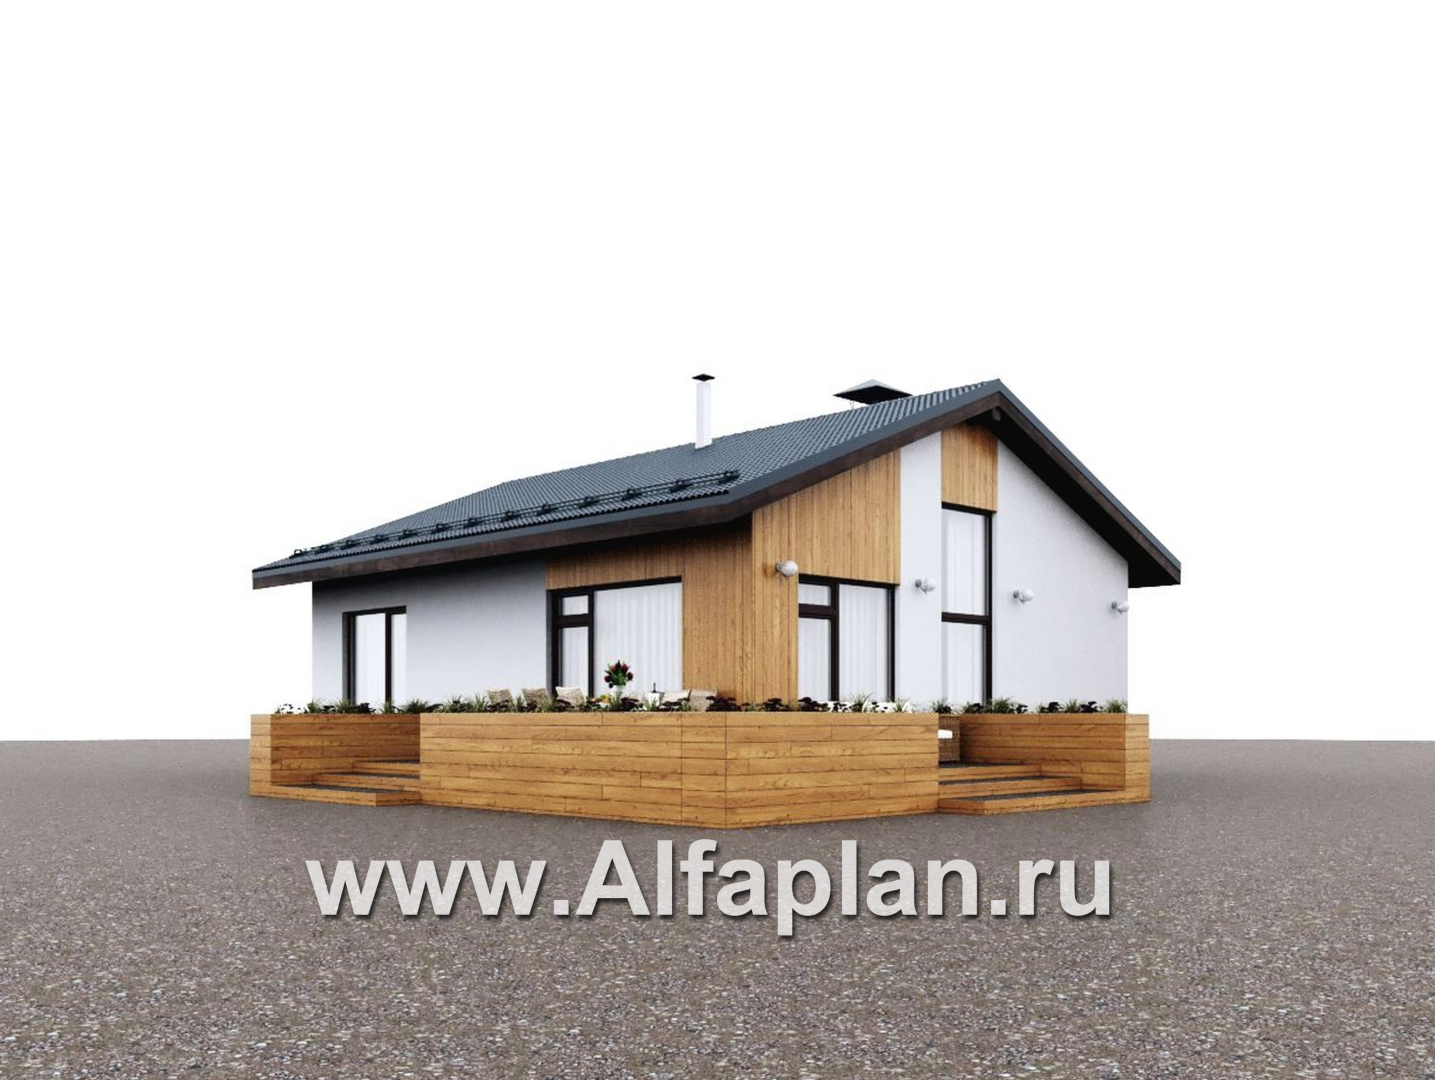 Проекты домов Альфаплан - "Литен" - проект простого одноэтажного дома с комфортной планировкой - дополнительное изображение №3